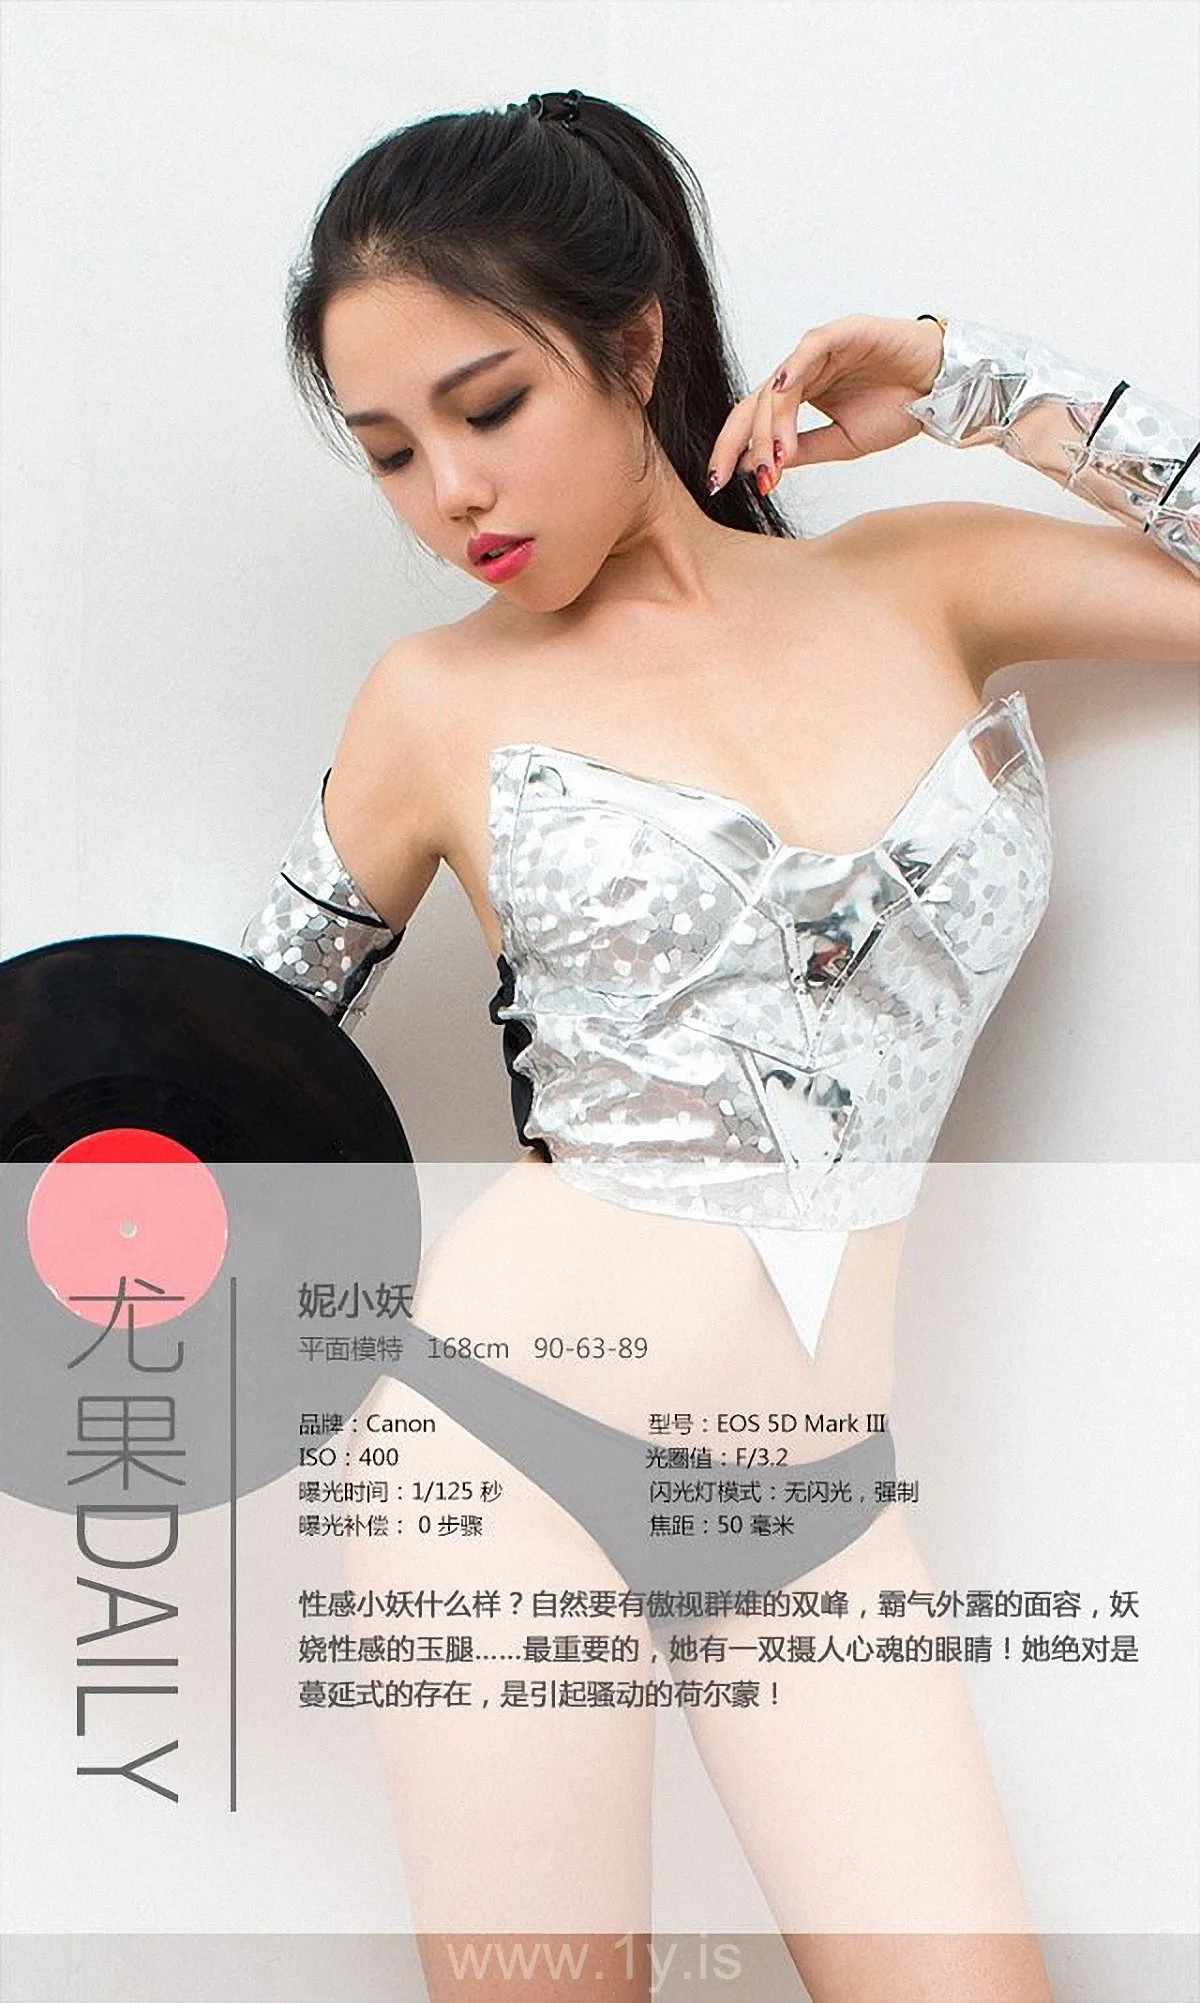 UGIRLS NO.232 Elegant & Attractive Chinese Chick 妮小妖